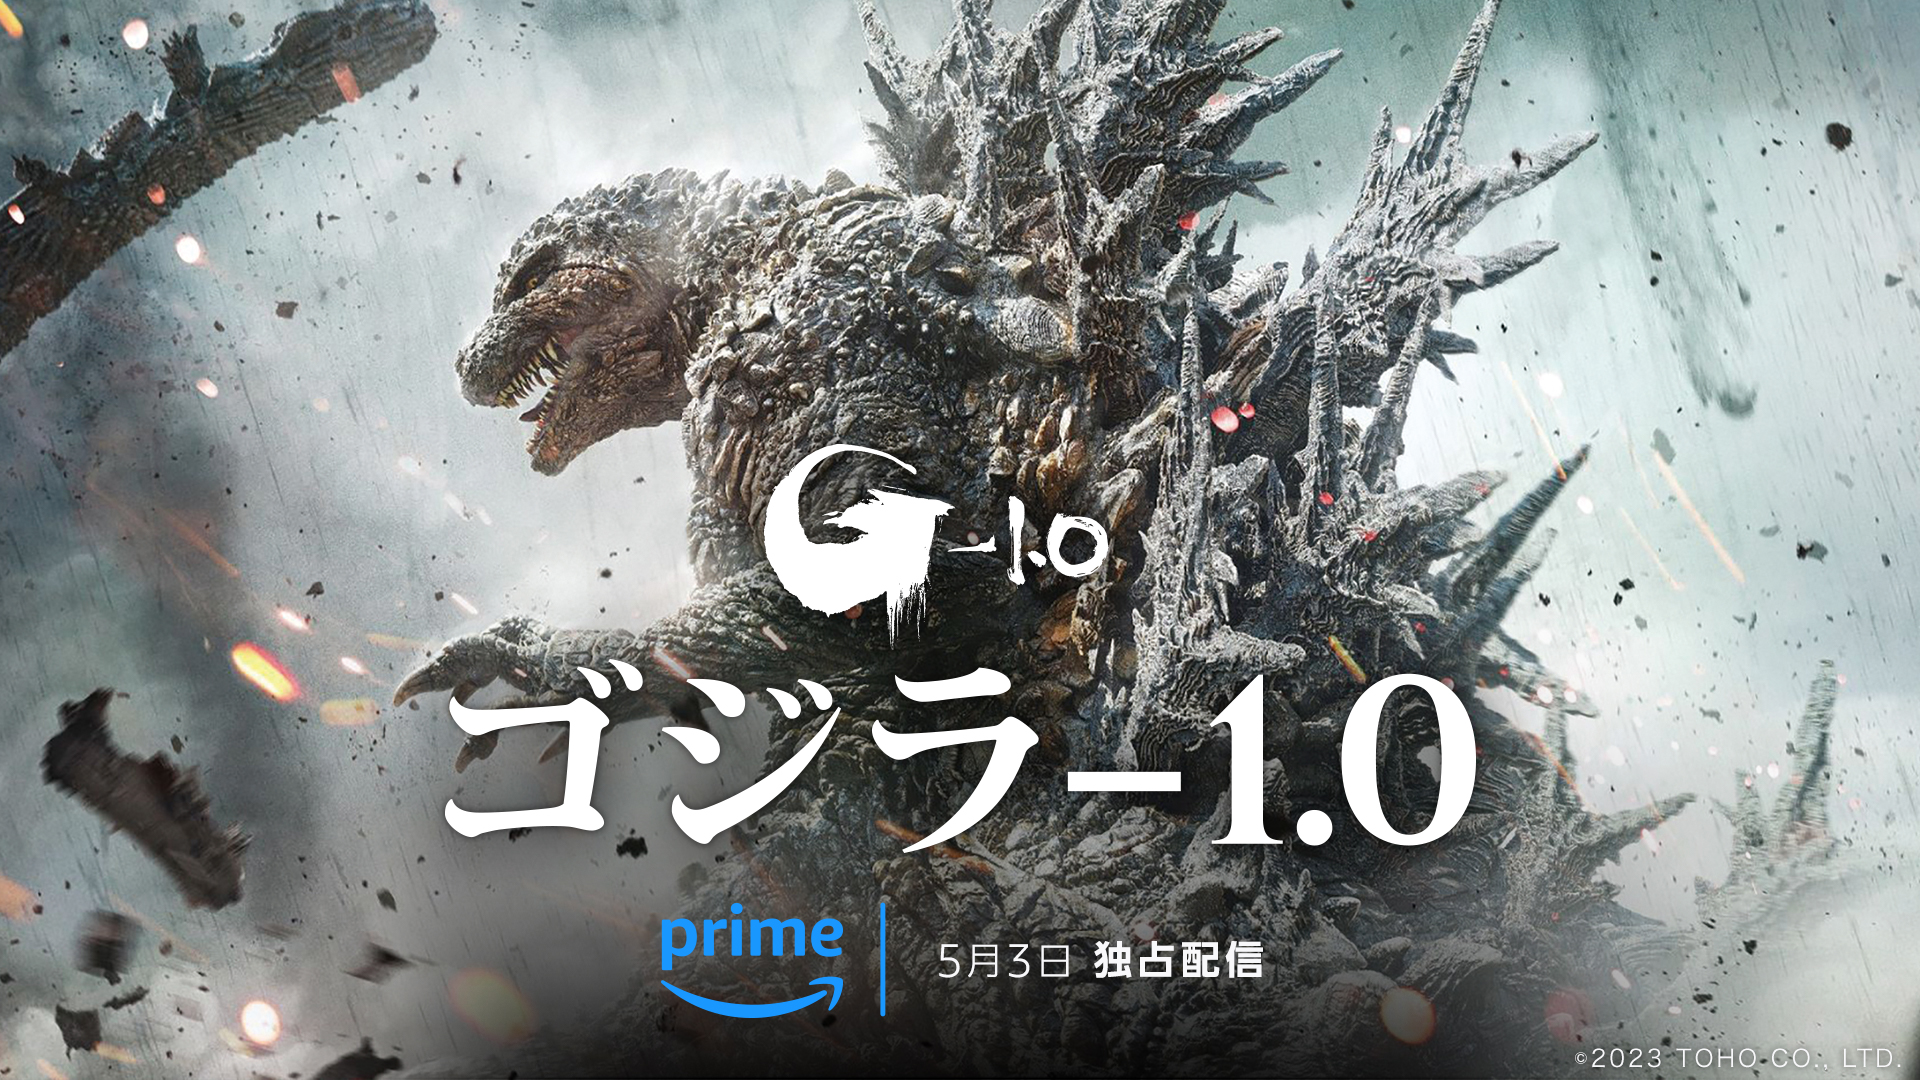 Le film « Godzilla-1.0 » sera disponible en visionnage illimité sur Amazon Prime Video à partir d’aujourd’hui, le 3 mai ! 30 films Godzilla japonais en direct – GAME Watch